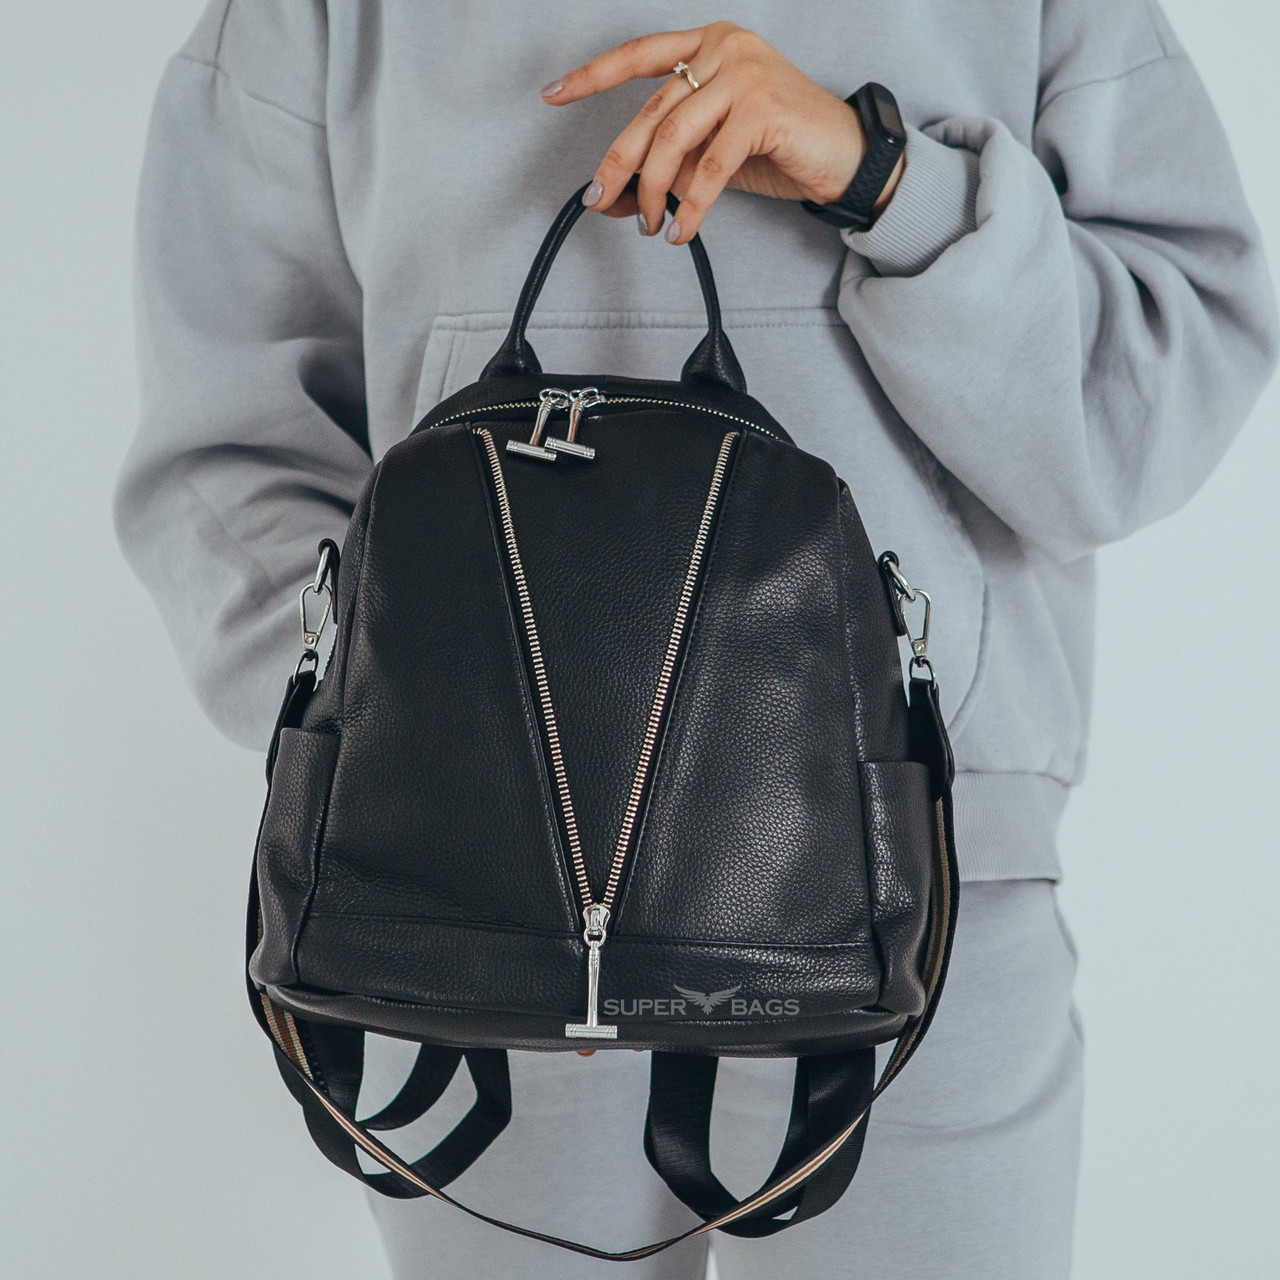 Жіночий шкіряний міський рюкзак Чорний, фото 1